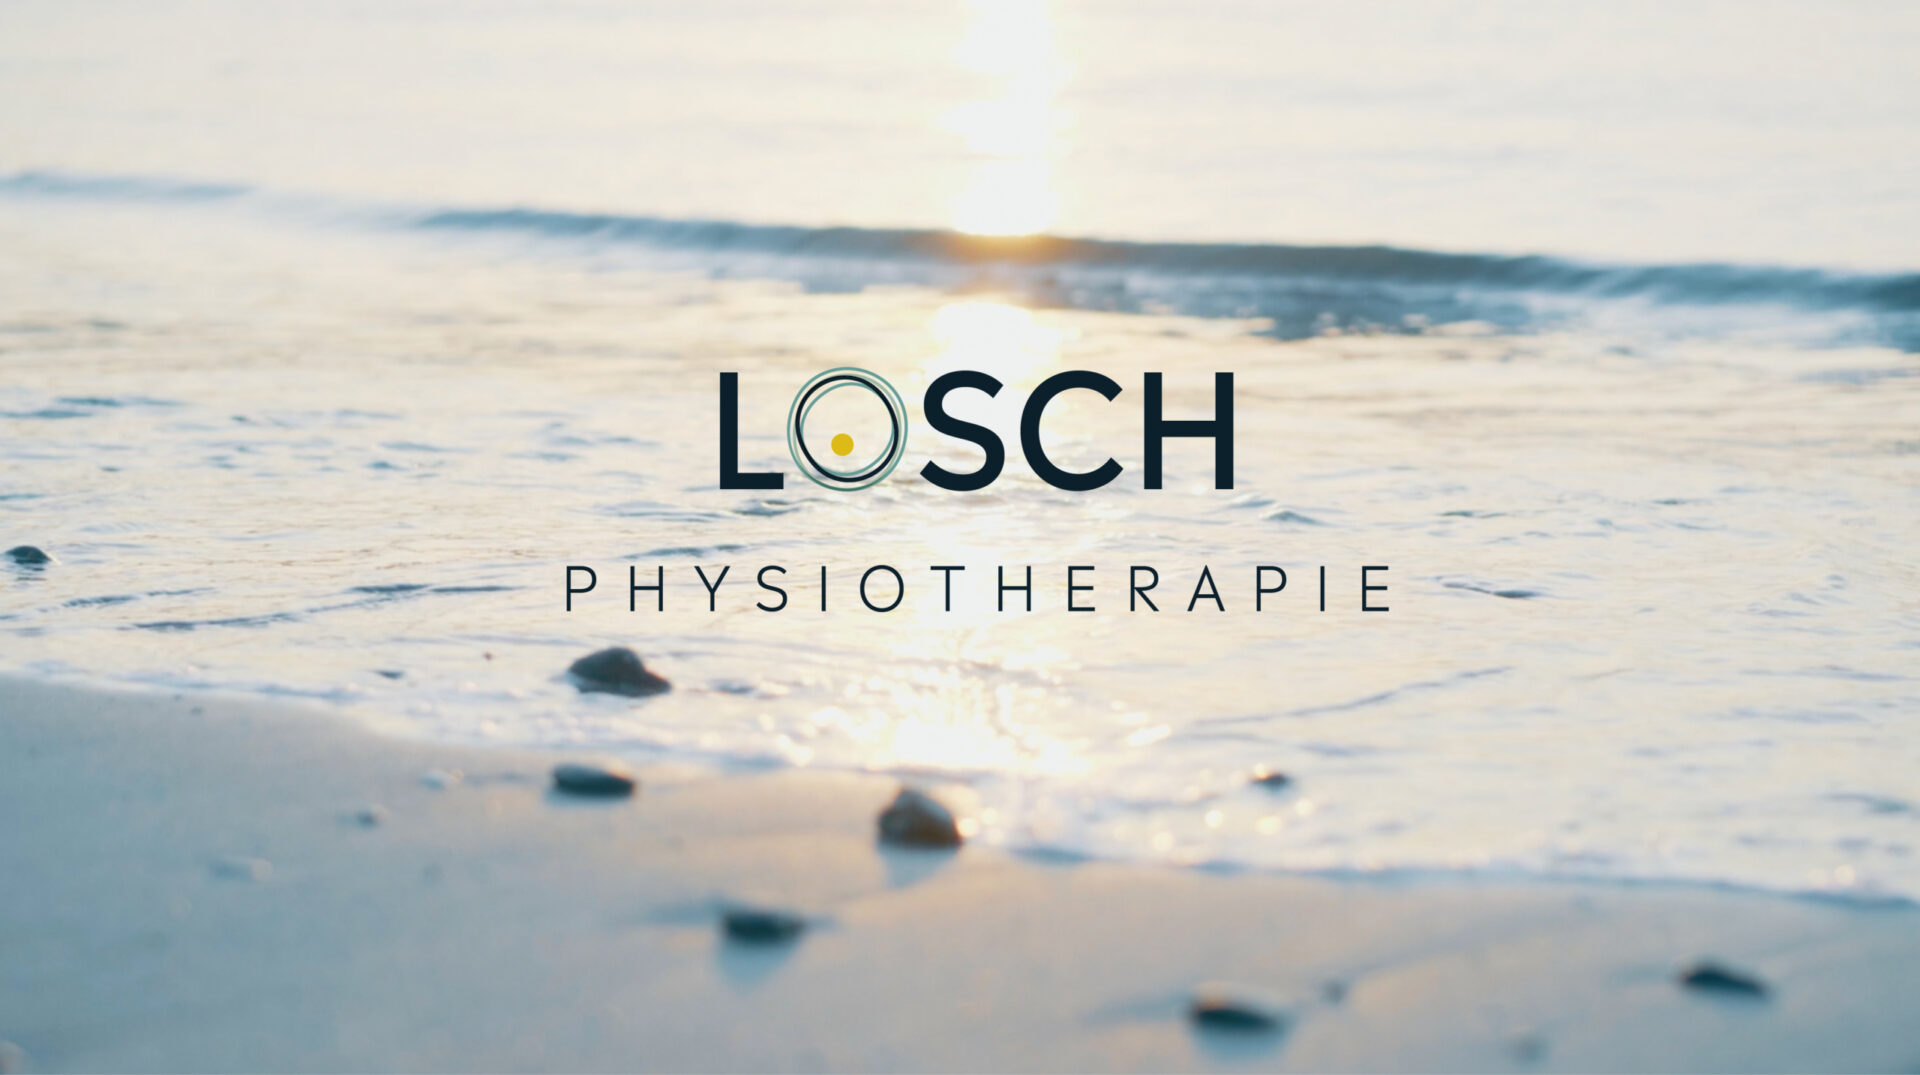 LOSCH Physiotherapie Design